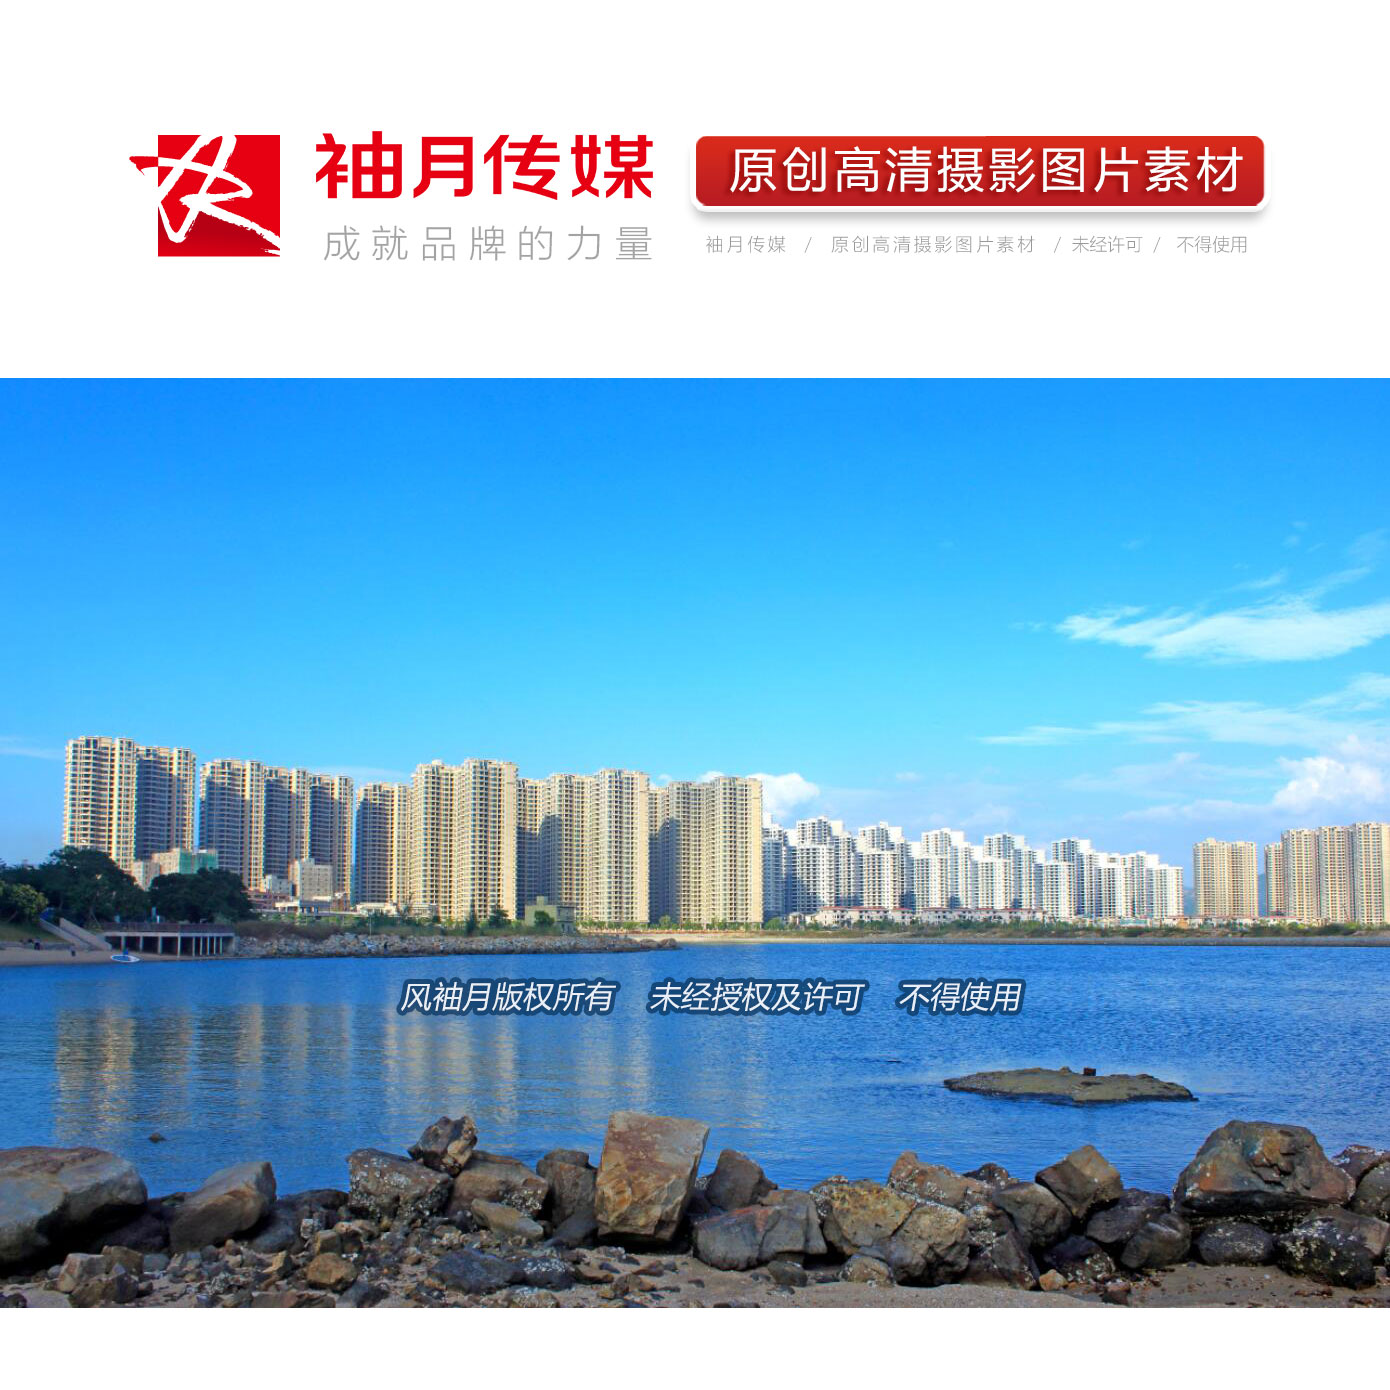 1张惠州海边十里银滩高清摄影图片素材滨海都市风光海滩图片素材